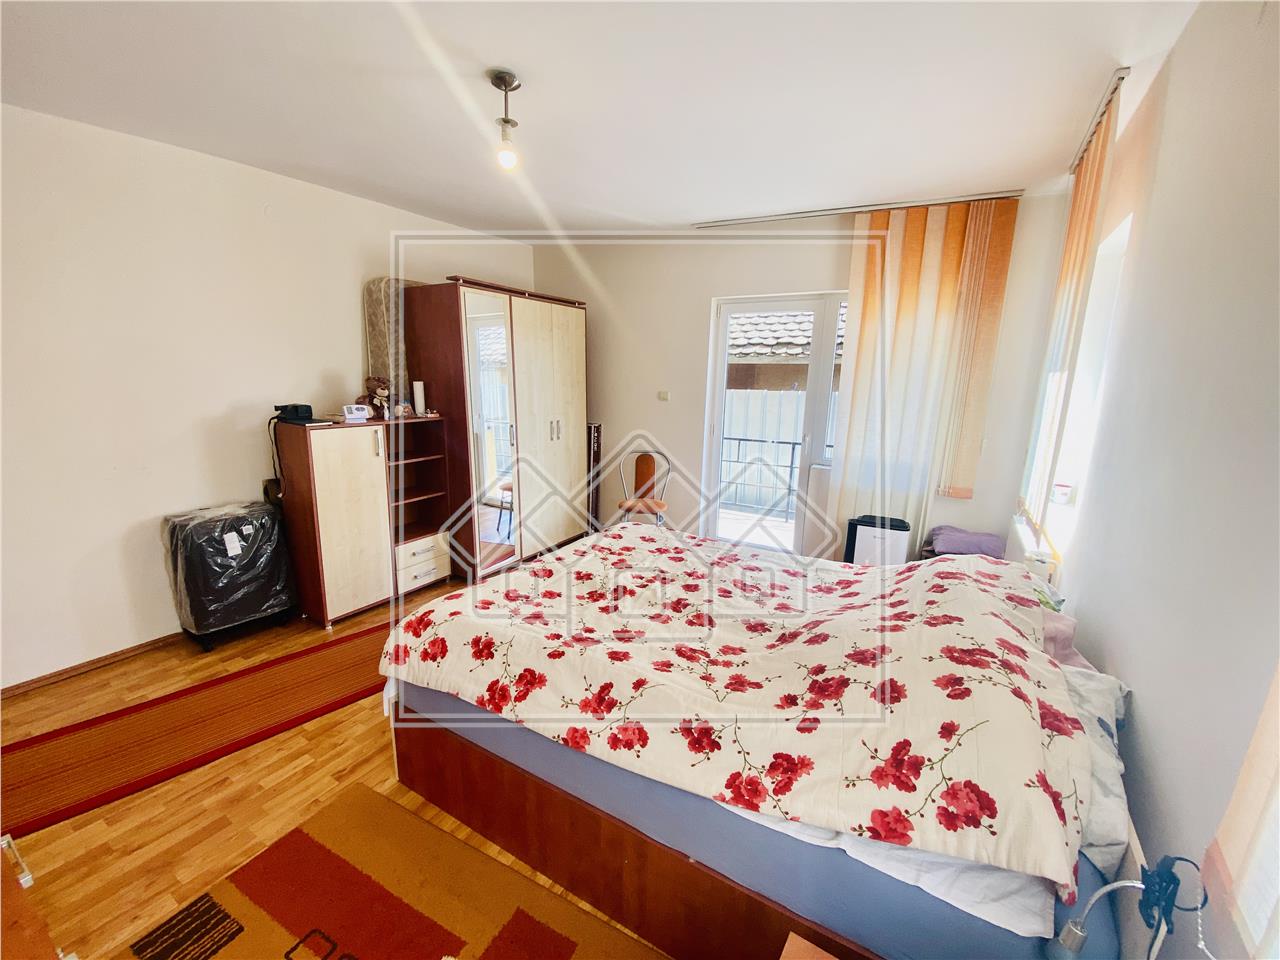 Wohnung zum Verkauf in Sibiu - 3 Zimmer und Balkon - Turnisor-Bereich